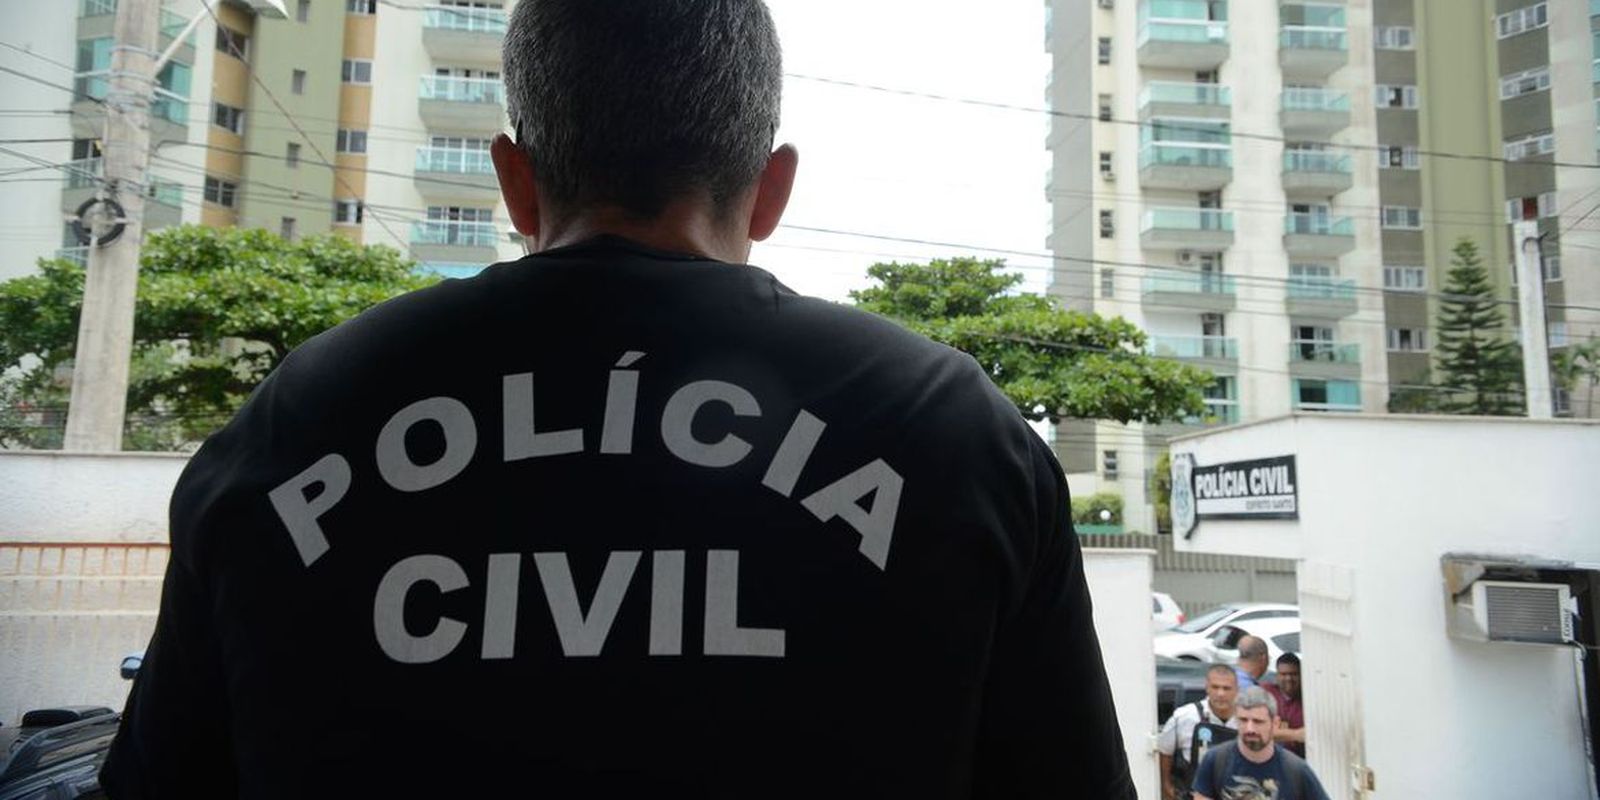 especialistas-defendem-reformulacao-da-policia-civil-do-rio